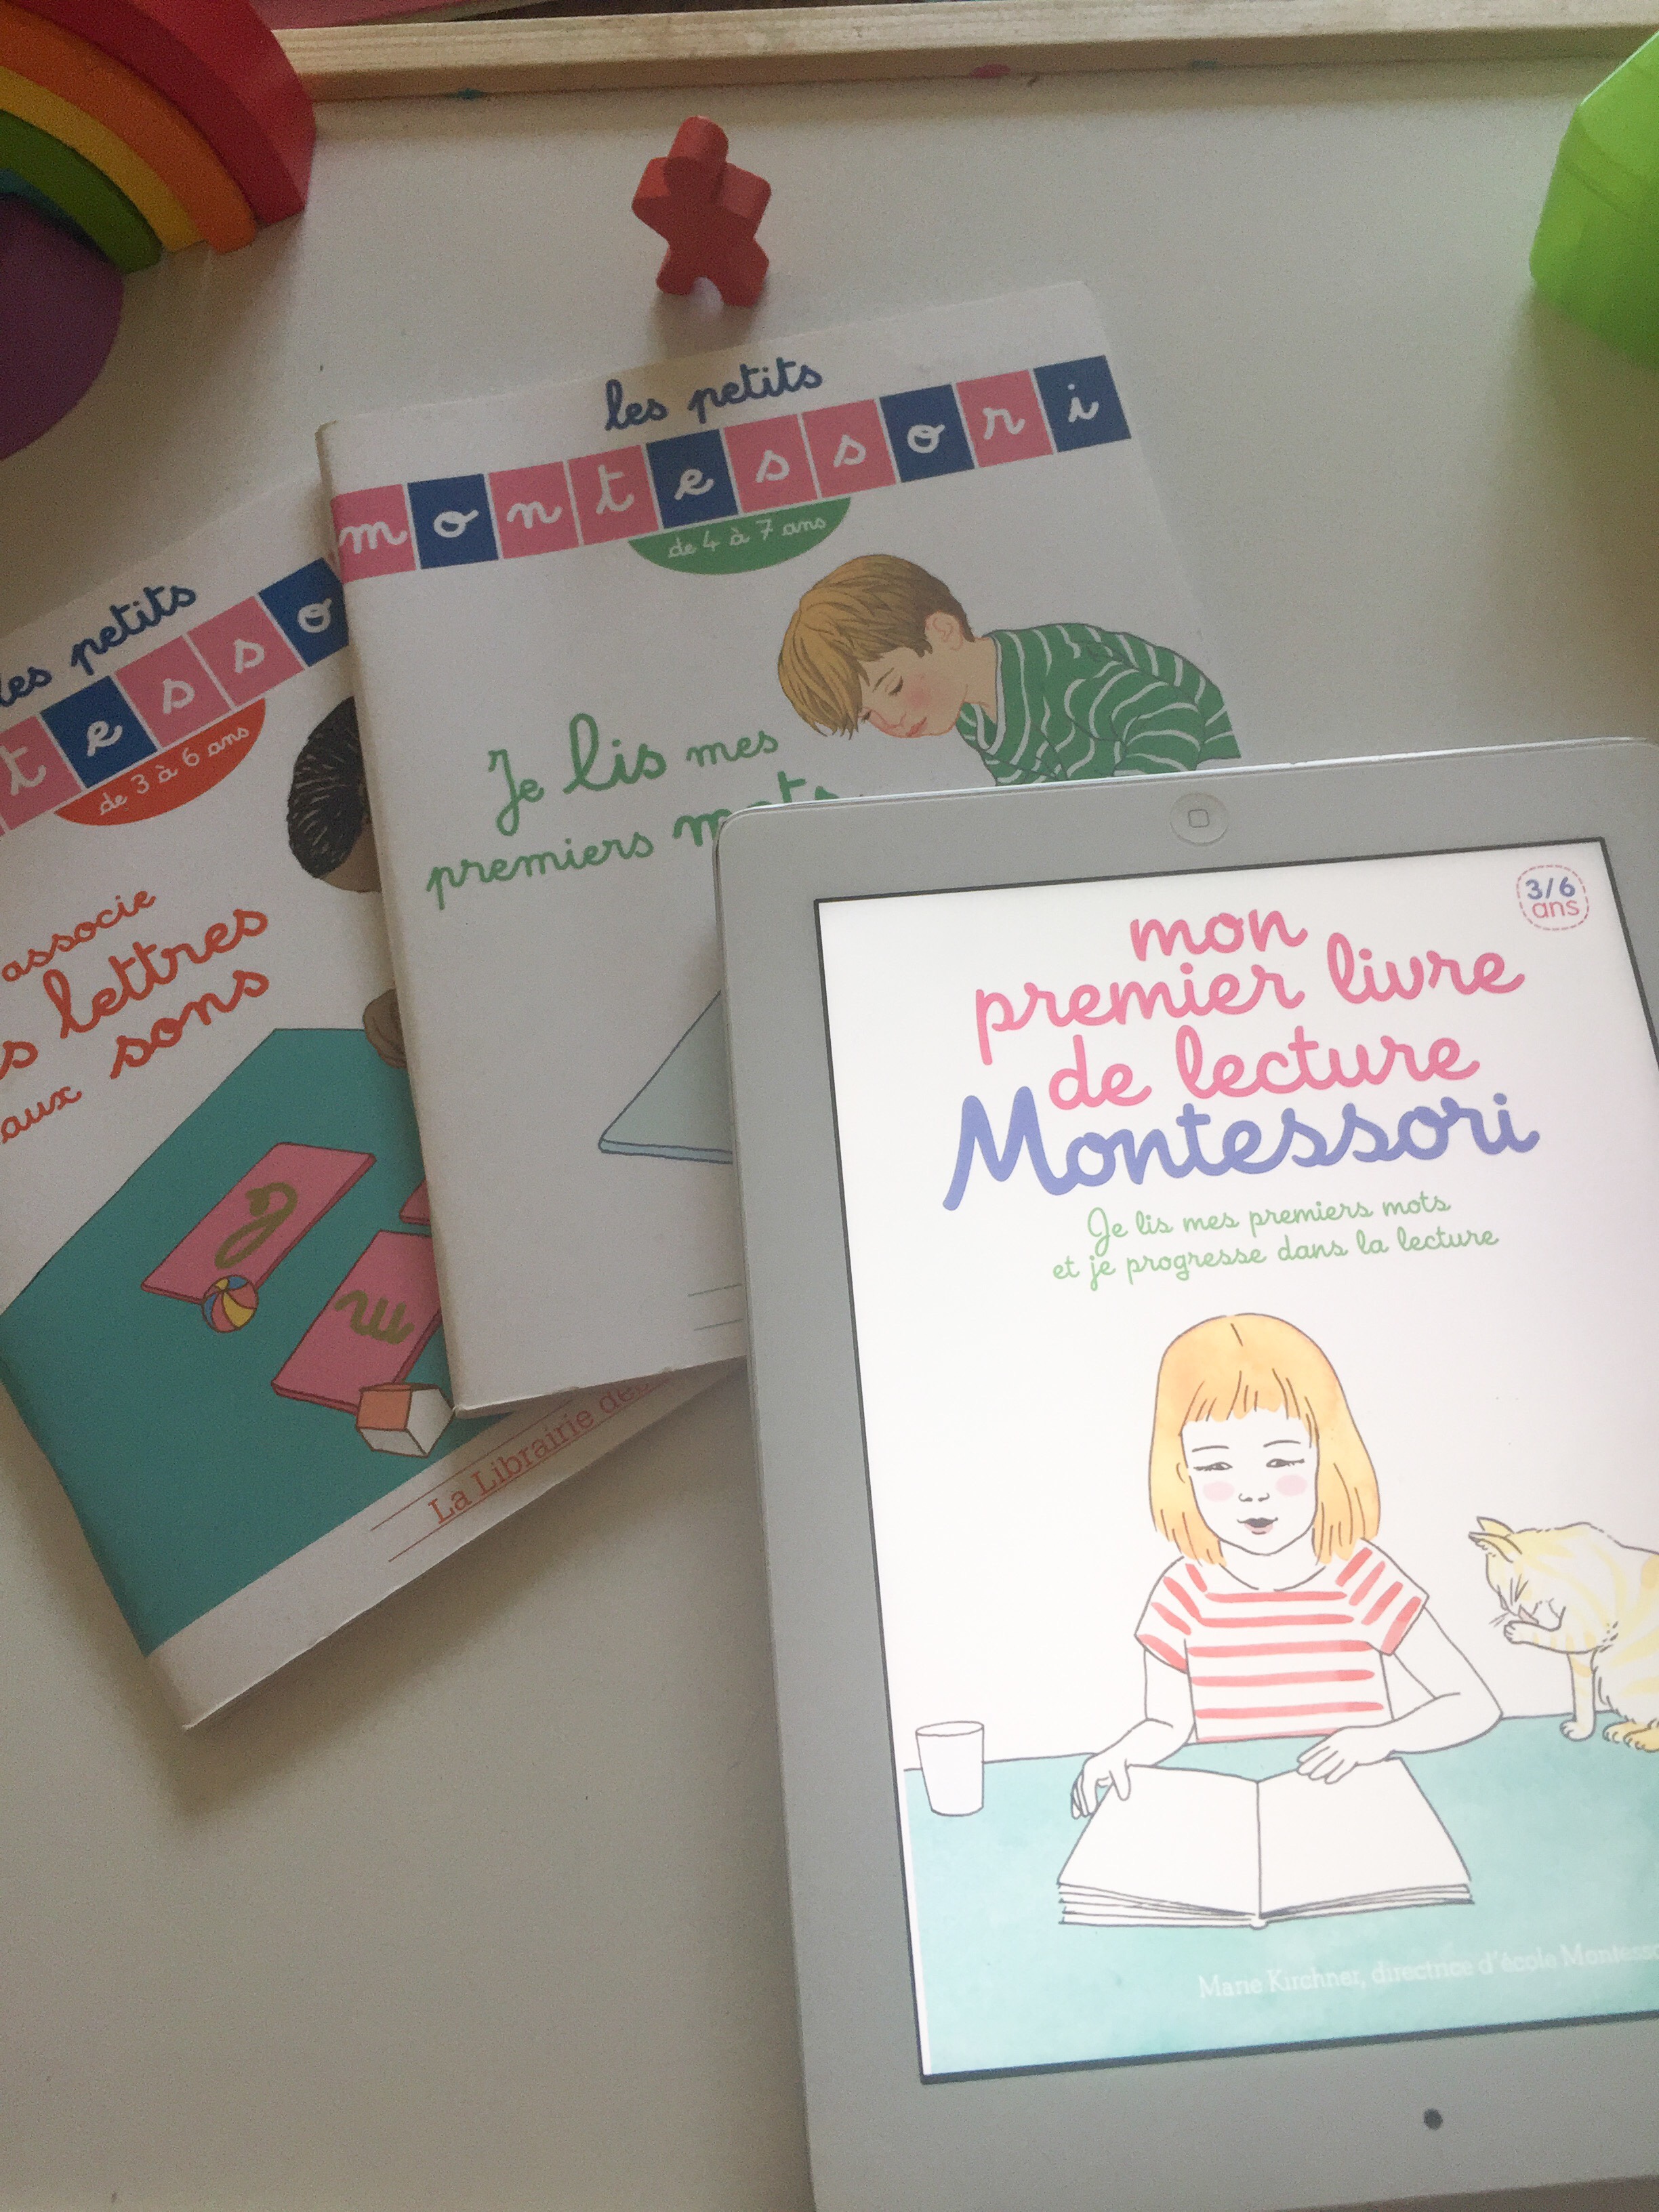 Les petits montessori - Je lis mes premiers mots ( de 4 à 7 ans )-  Librairie des écoles